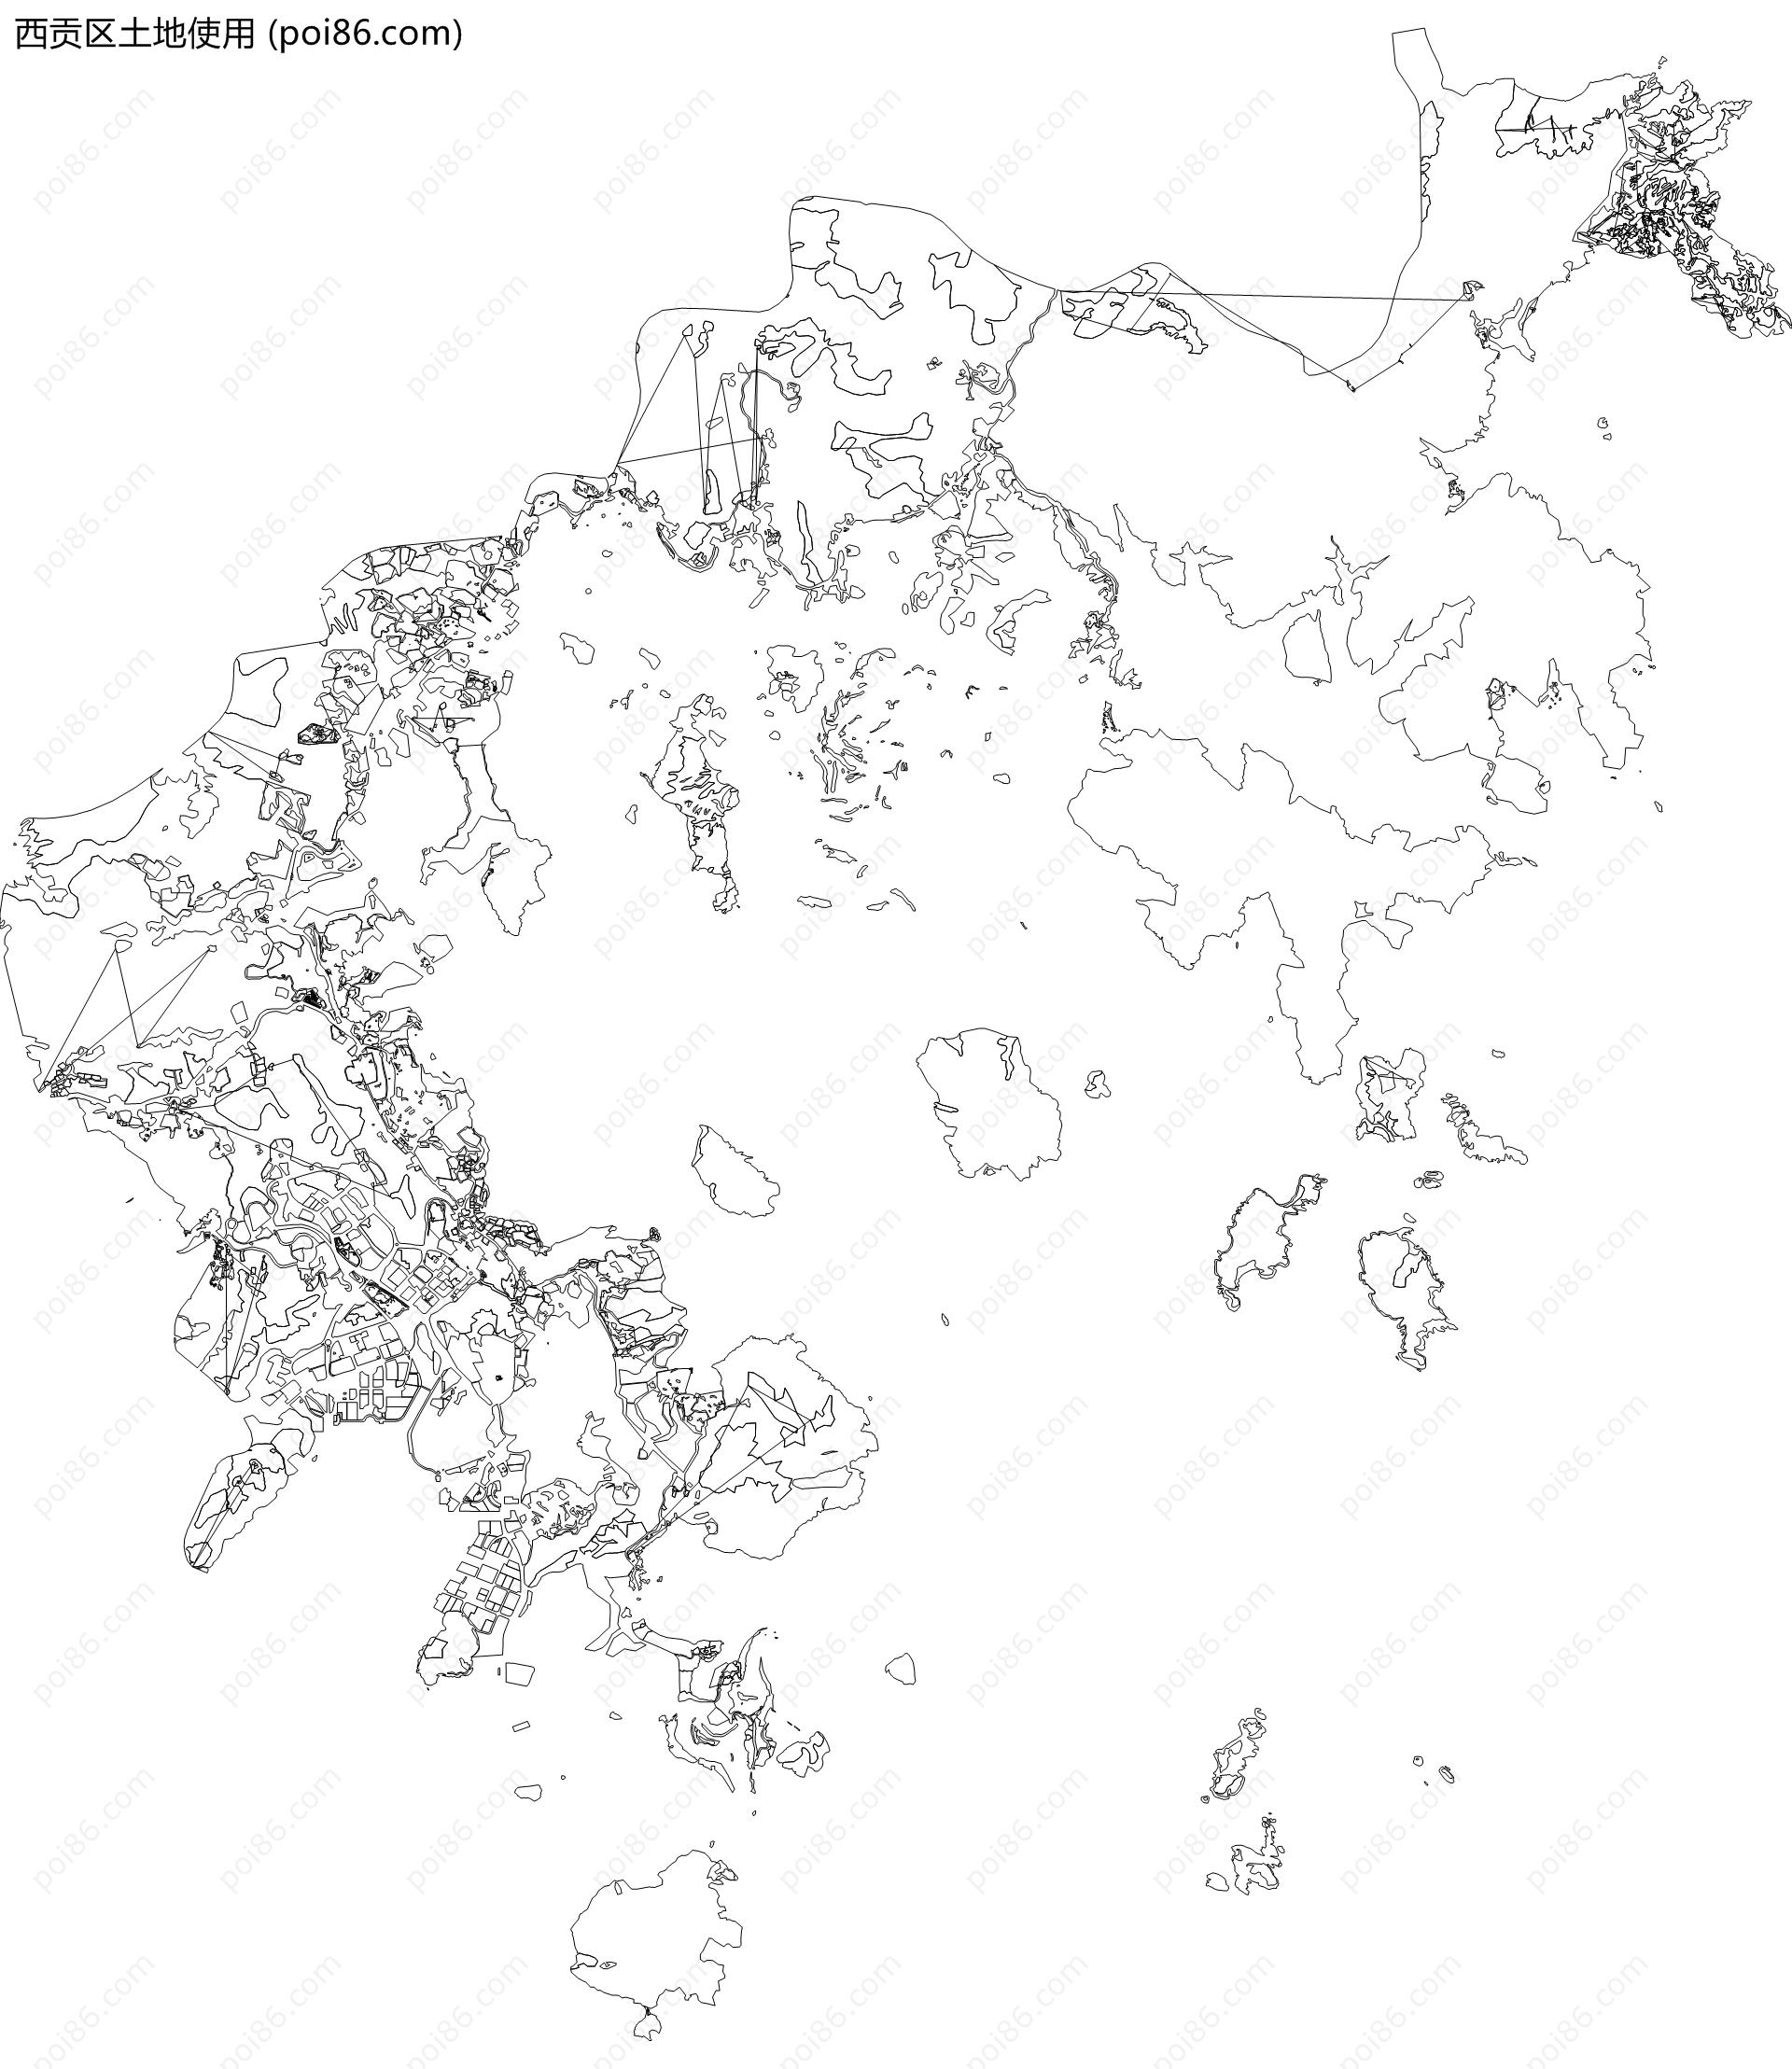 西贡区土地使用地图